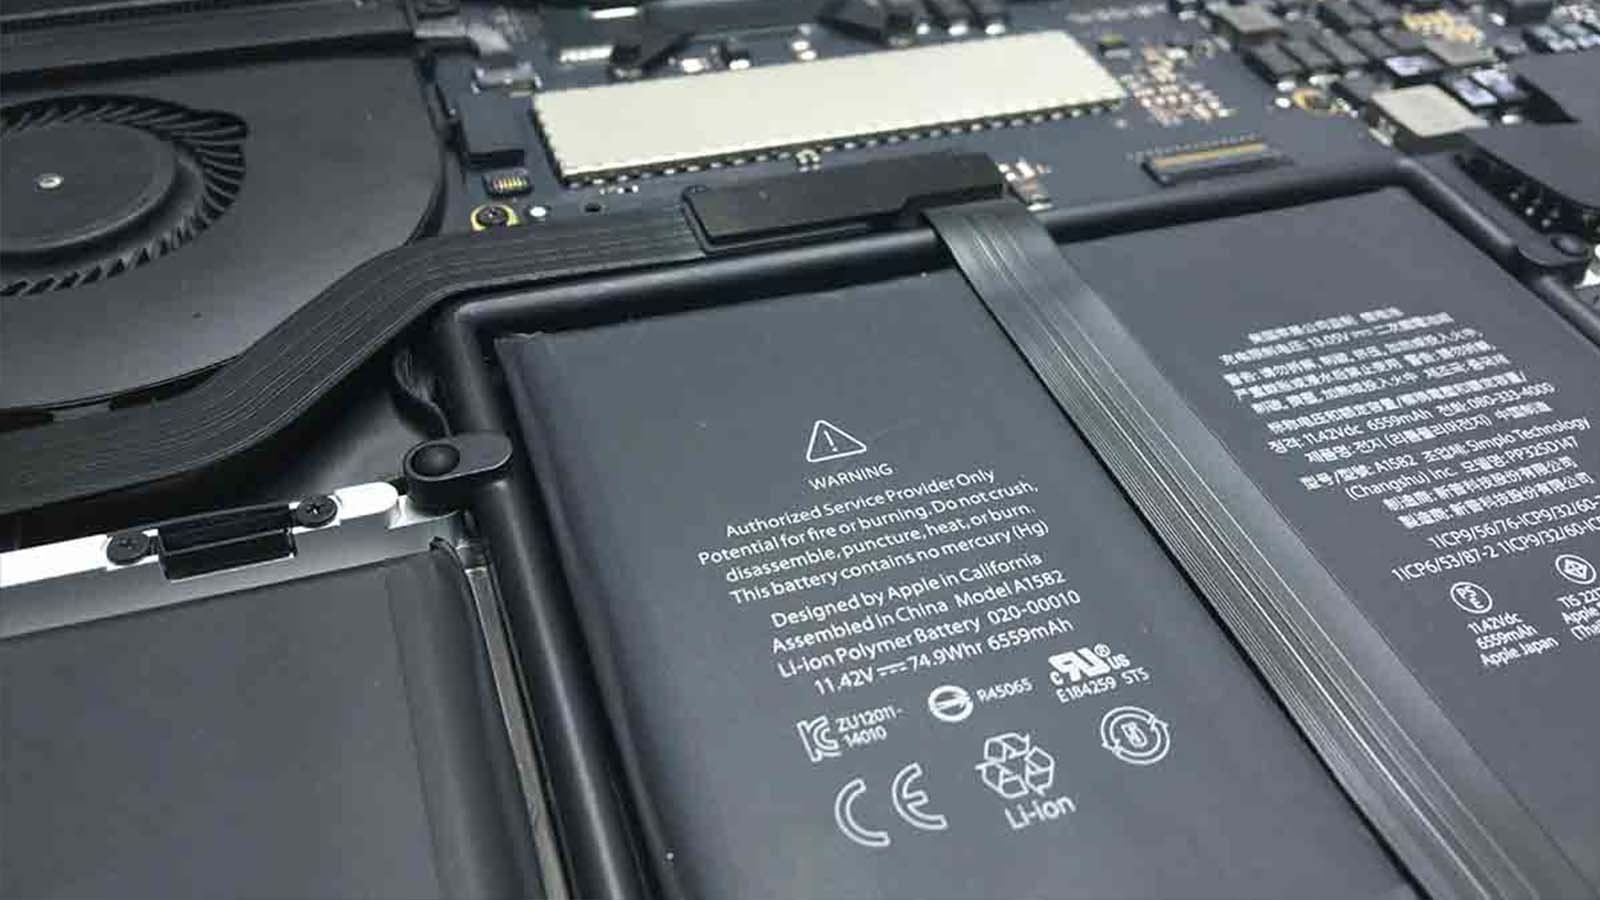 macbook battery replacement center qatar